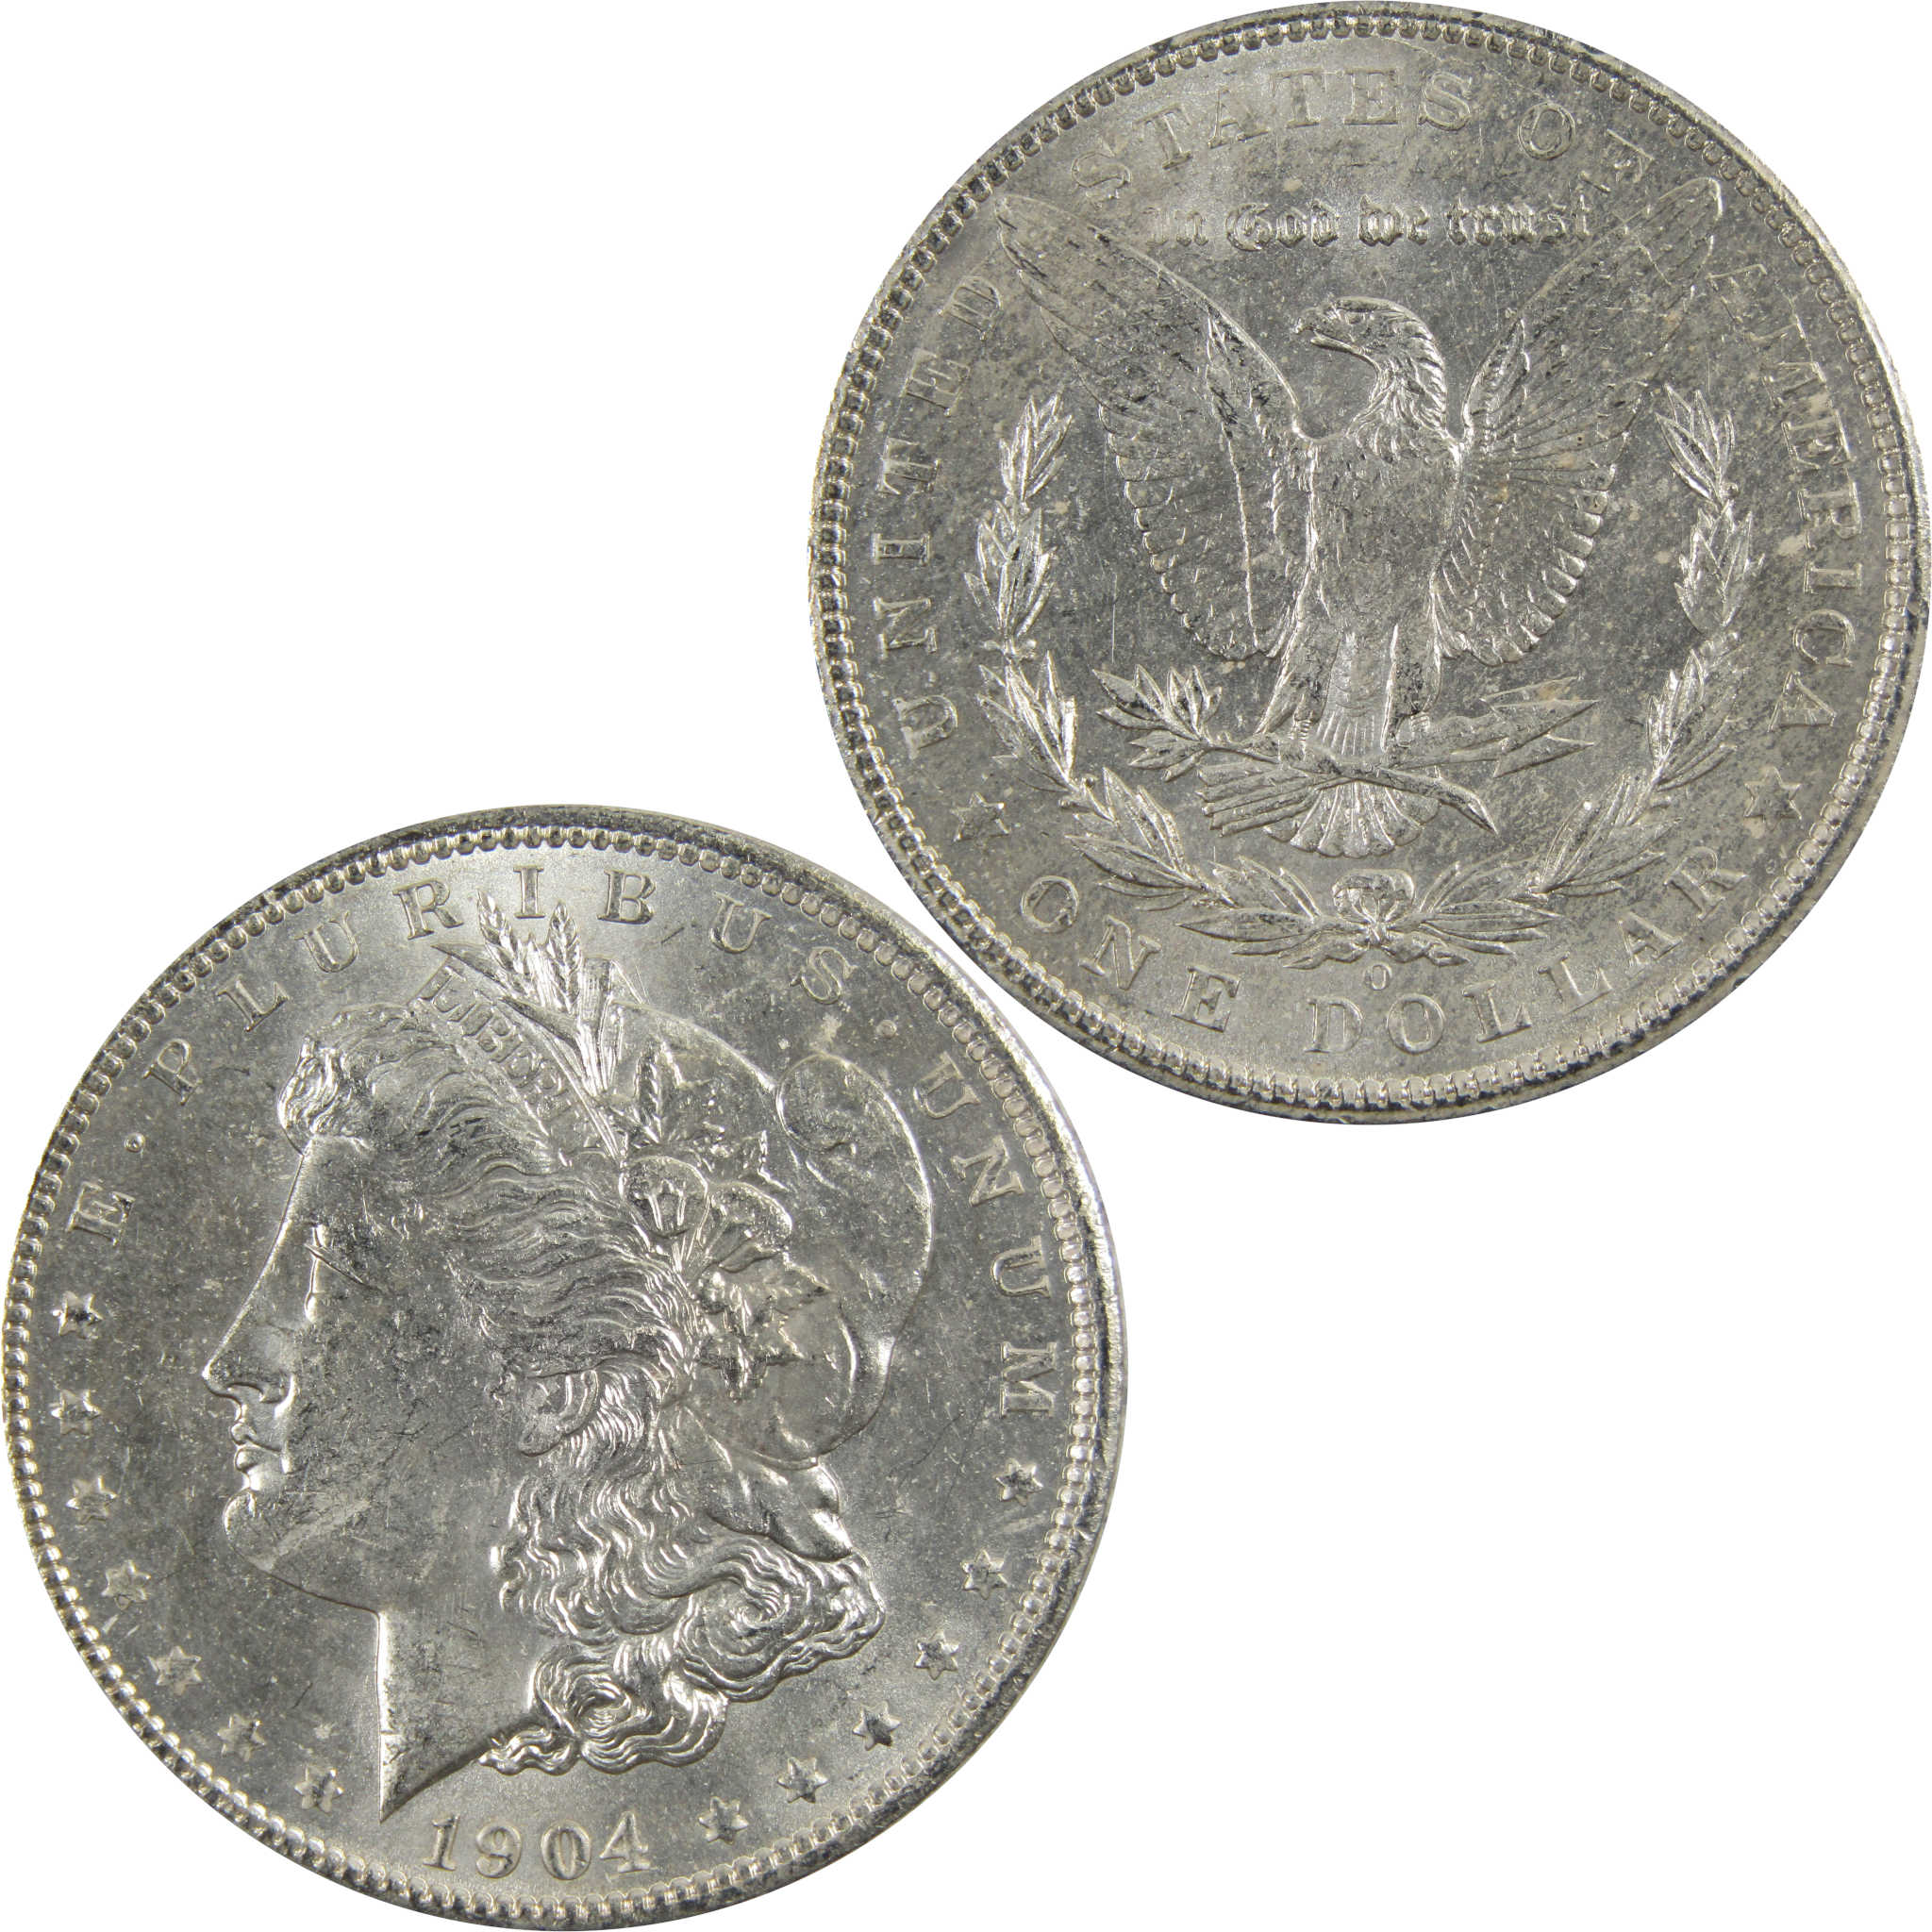 1904 O Morgan Dollar BU Uncirculated 90% Silver $1 Coin SKU:I5279 - Morgan coin - Morgan silver dollar - Morgan silver dollar for sale - Profile Coins &amp; Collectibles